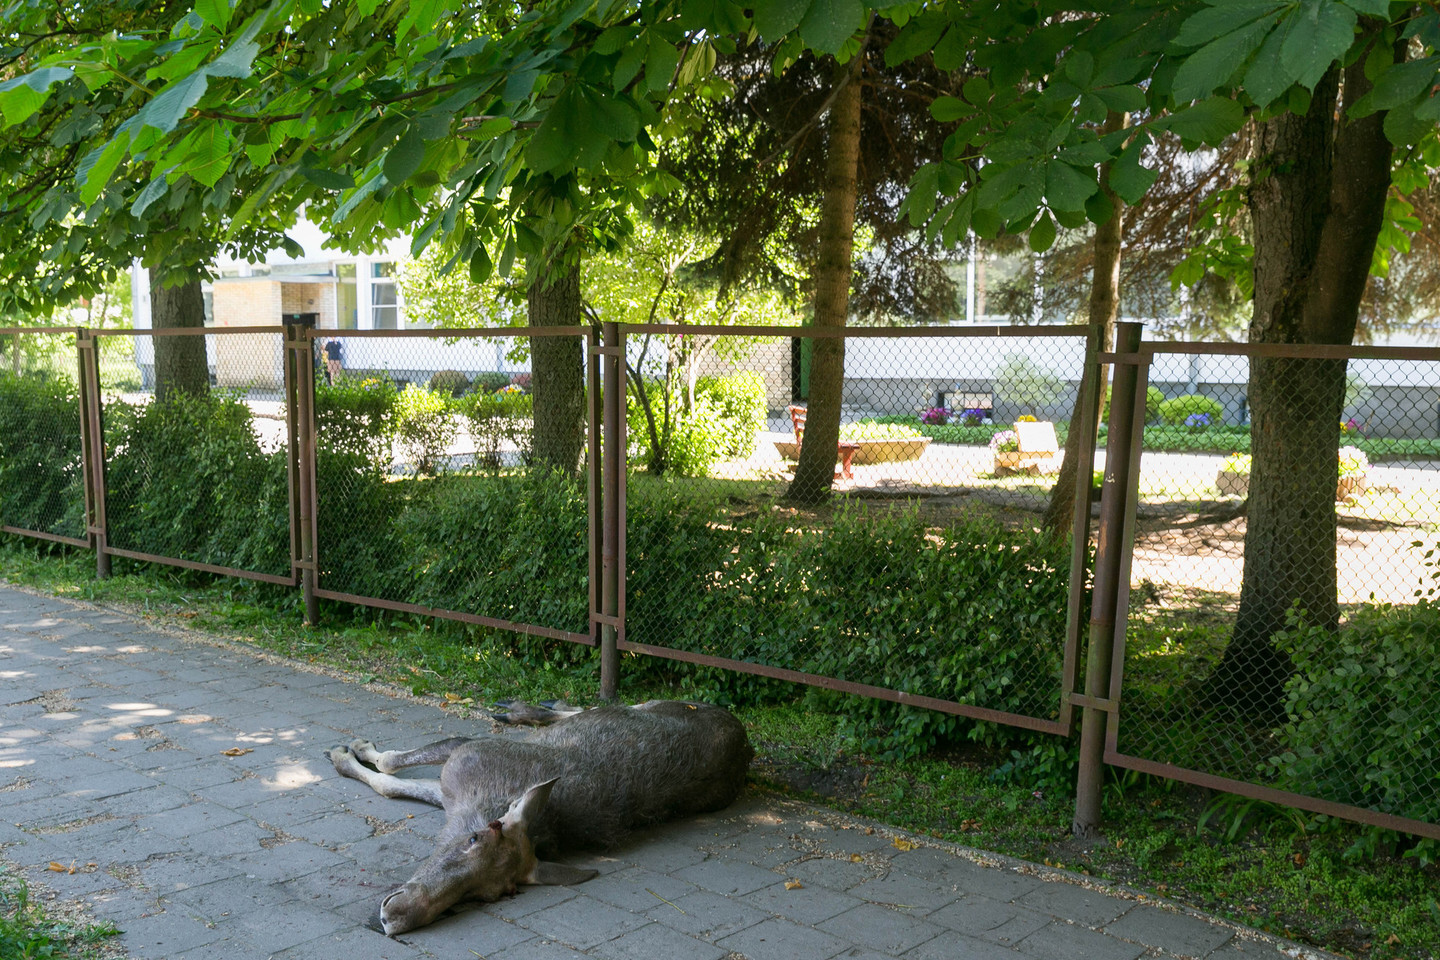 Jaunas briedis neišgyveno. Vilniuje neatsirado gamtos apsaugos specialistų, kurie reaguotų į pranešimą ir būtų galėję išgelbėti gyvūną.<br>T.Bauro nuotr.